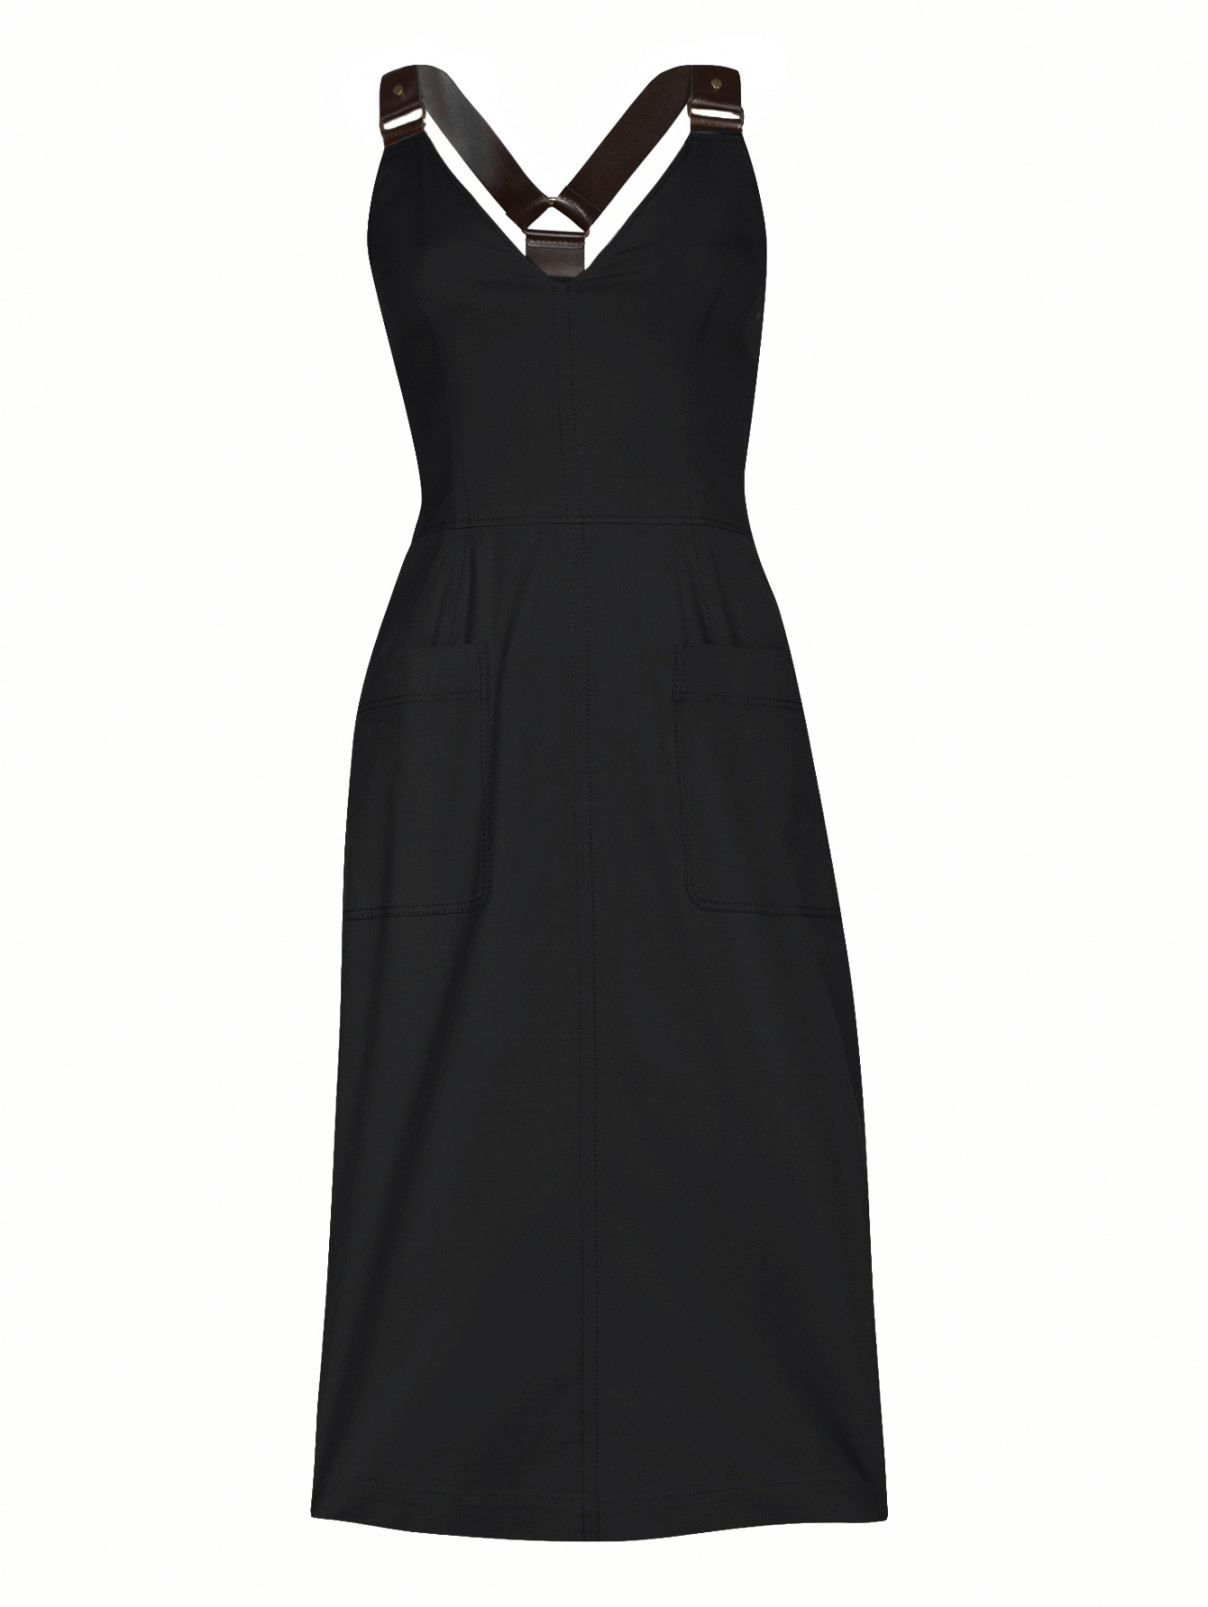 Платье-миди из хлопка с накладными карманами Alberta Ferretti  –  Общий вид  – Цвет:  Черный